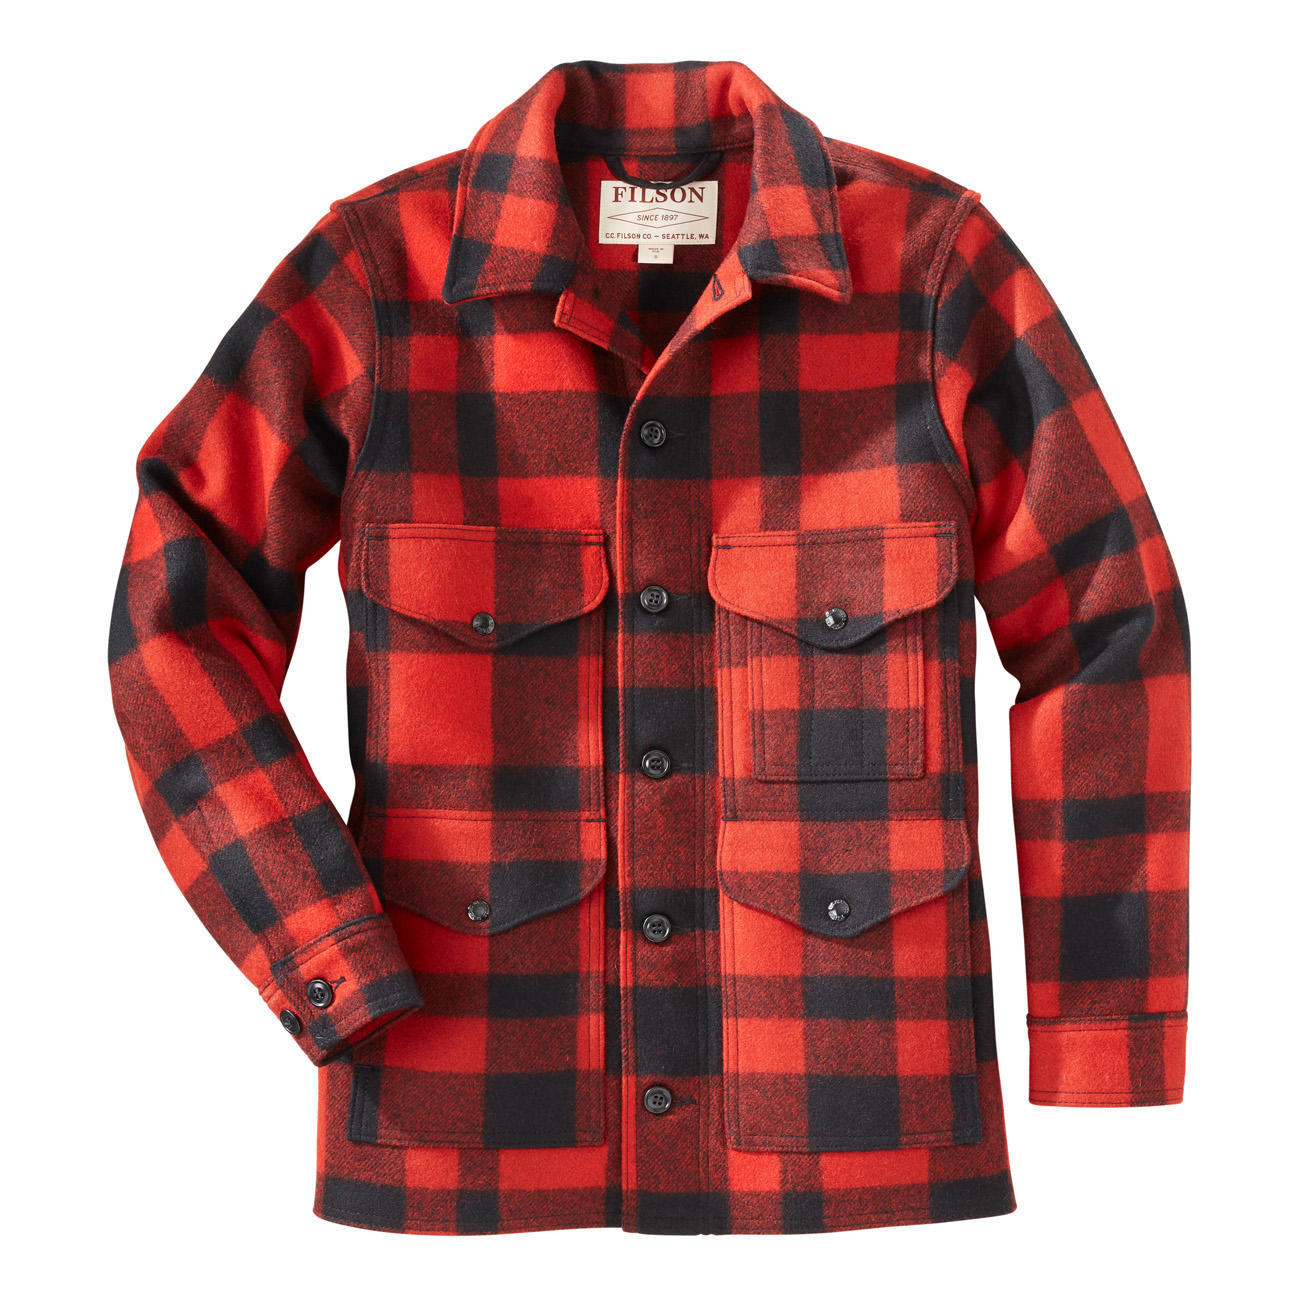 Filson Lumberjack Wool Jacket | Klassiker entdecken